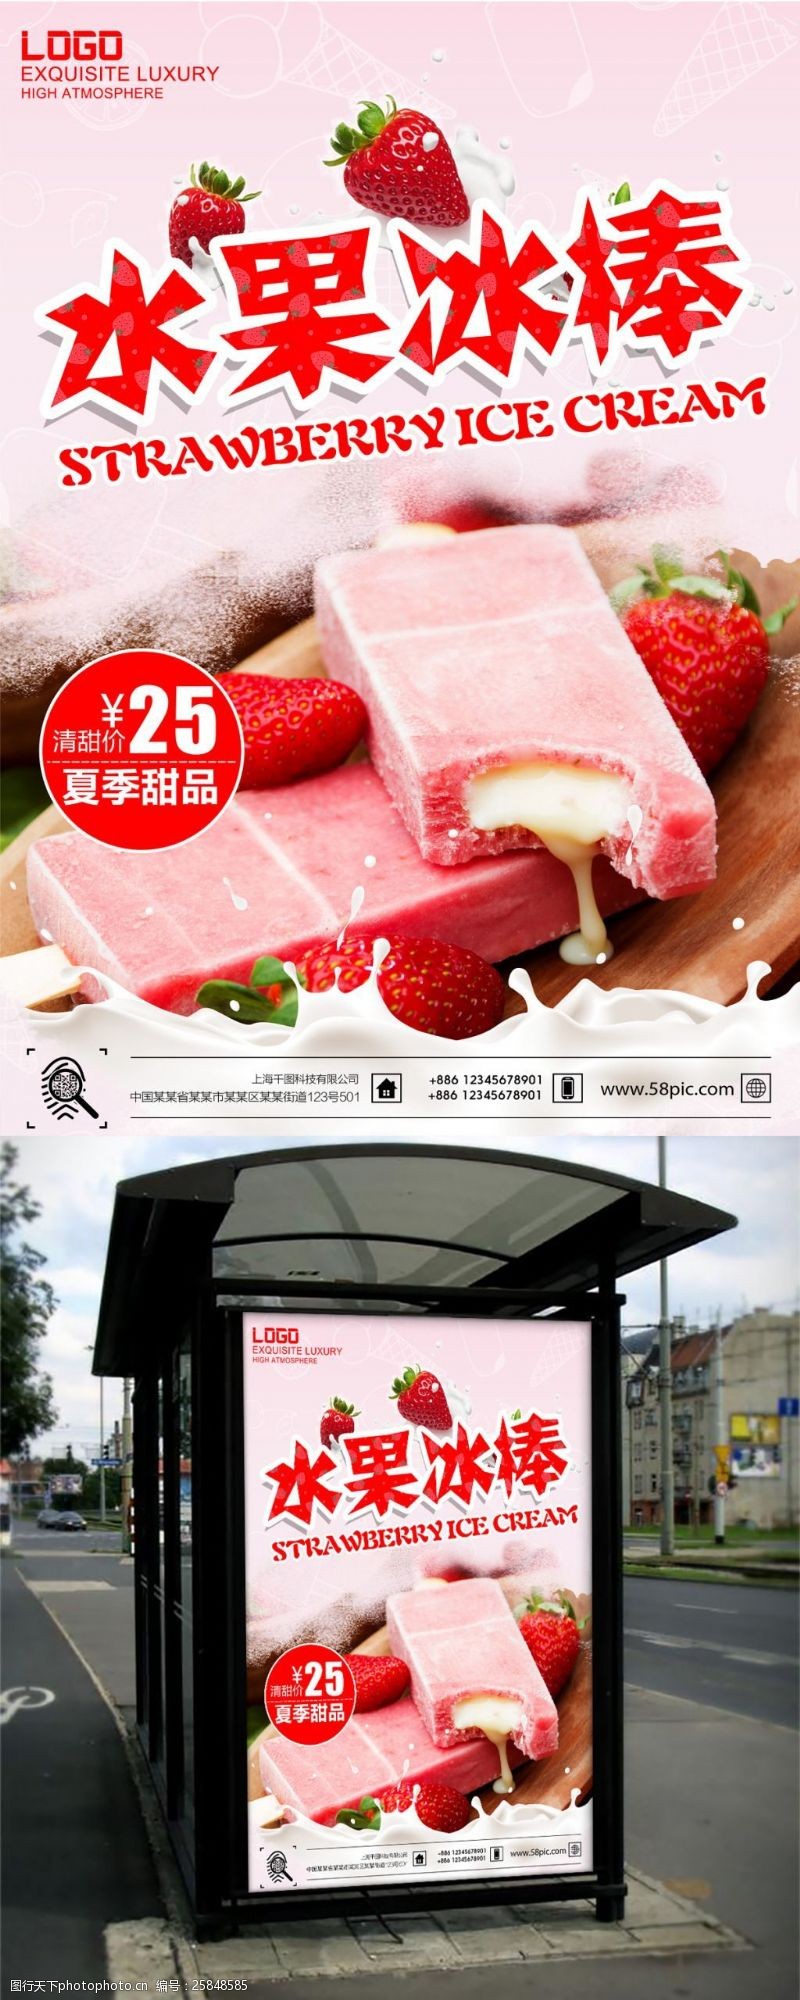 冰激凌模板下载粉色调夏季草莓水果冰棍促销海报